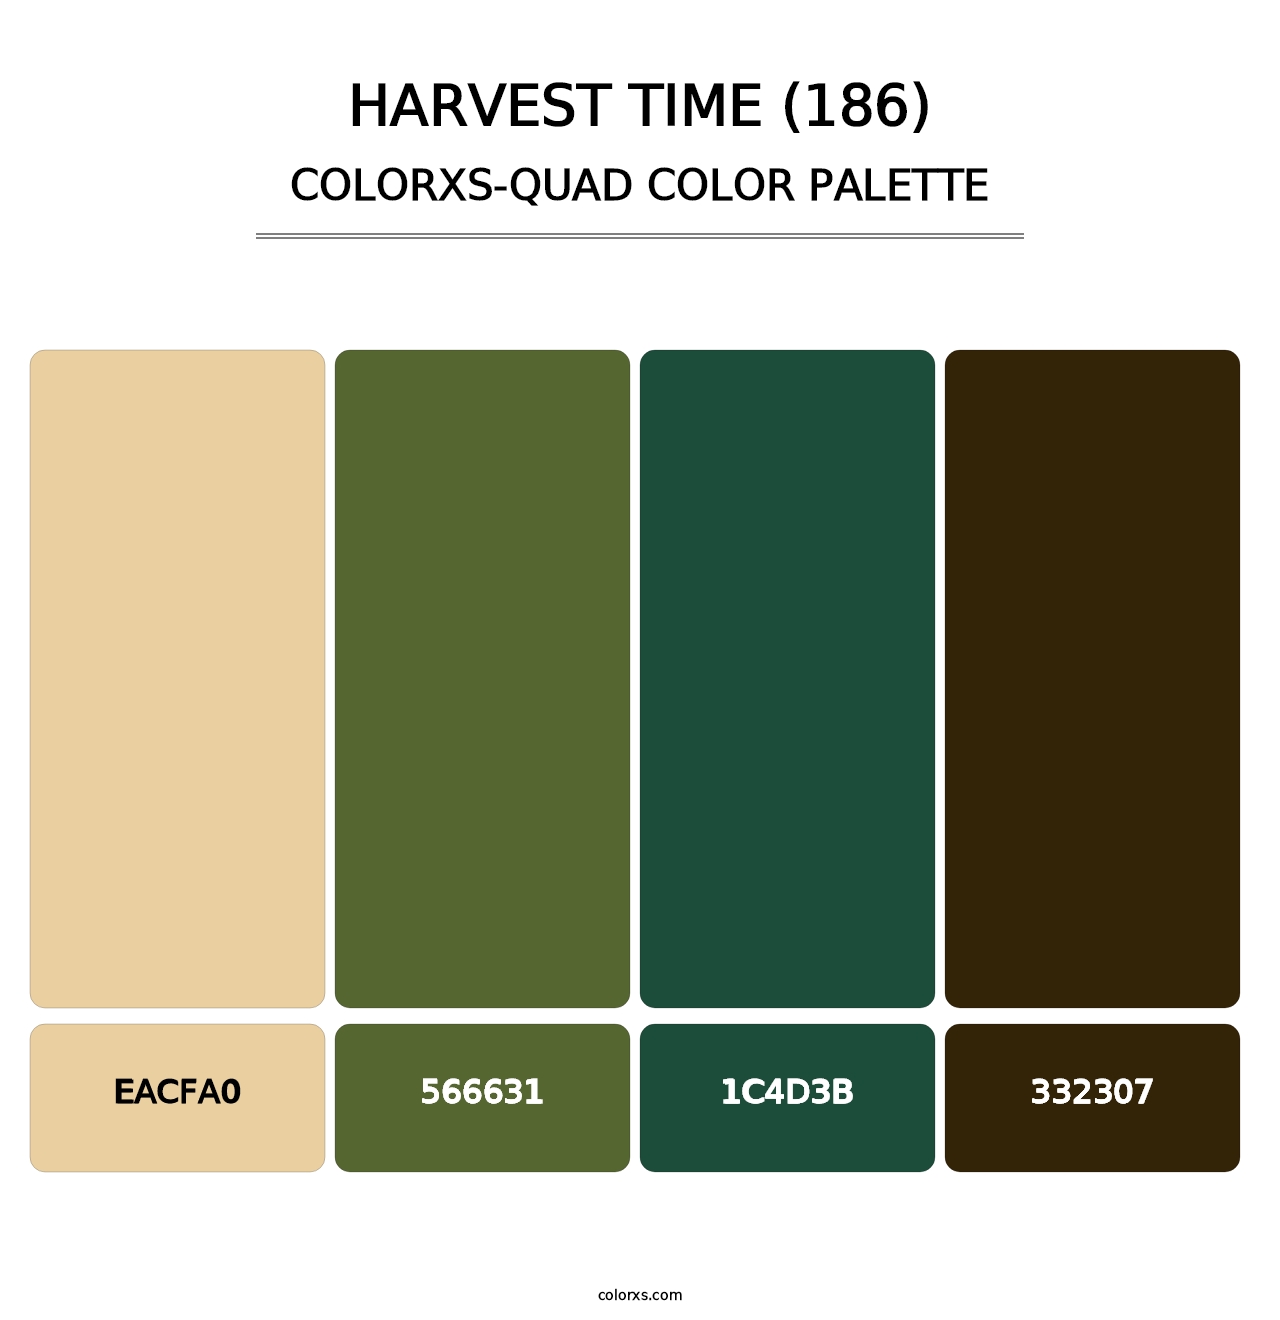 Harvest Time (186) - Colorxs Quad Palette